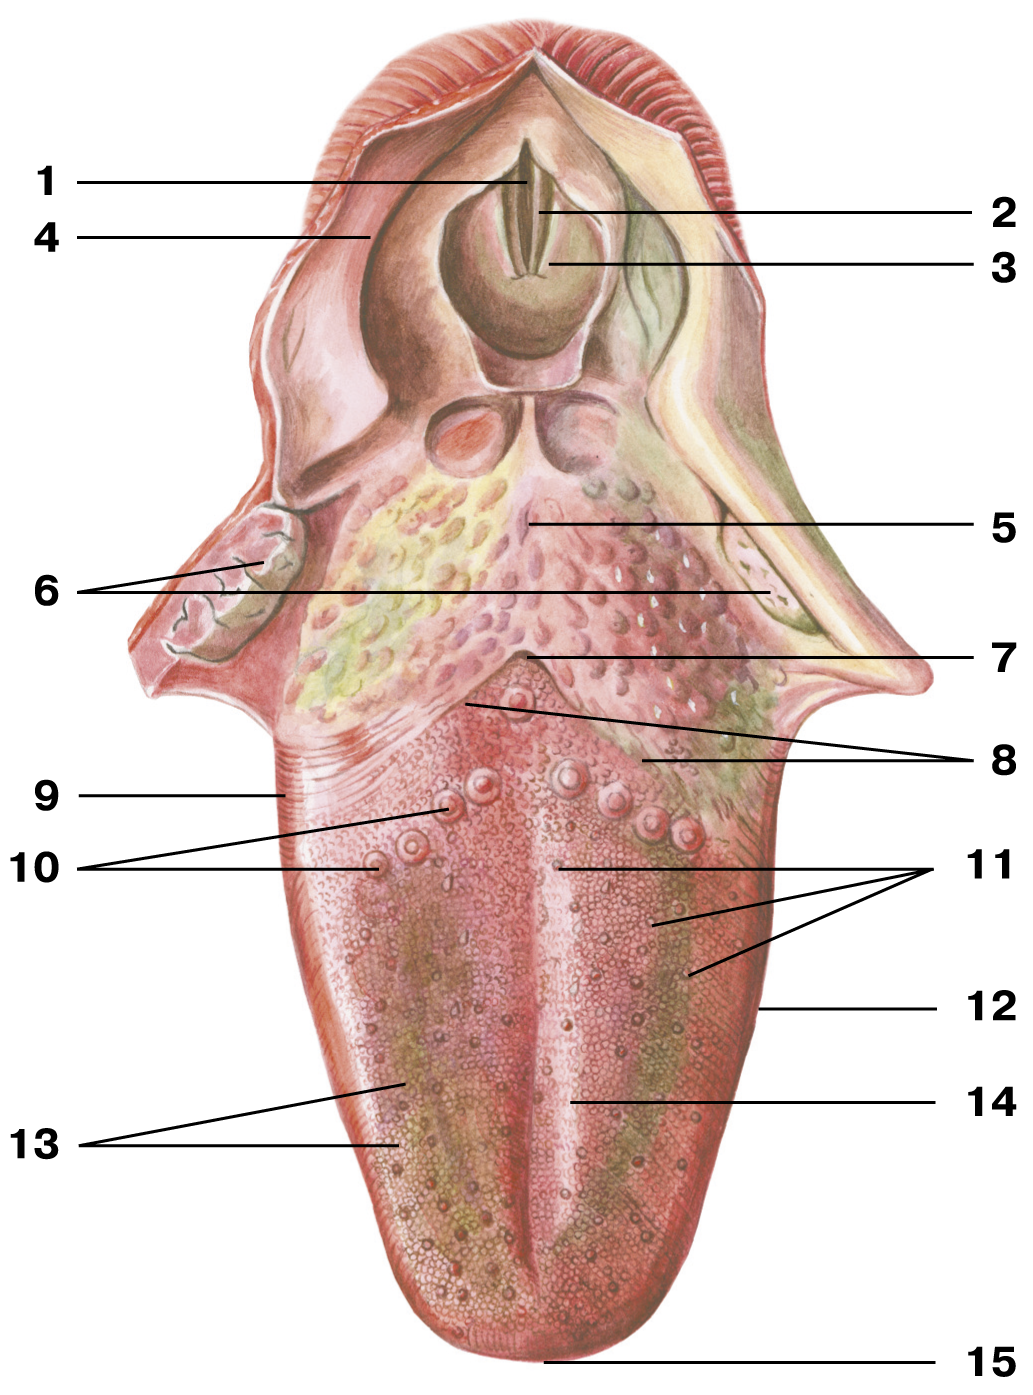 Внутренняя часть рта. Желобовидные сосочки корня языка. Язычная миндалина анатомия. Грибовидные сосочки языка анатомия. Черпалонадгортанная складка анатомия.